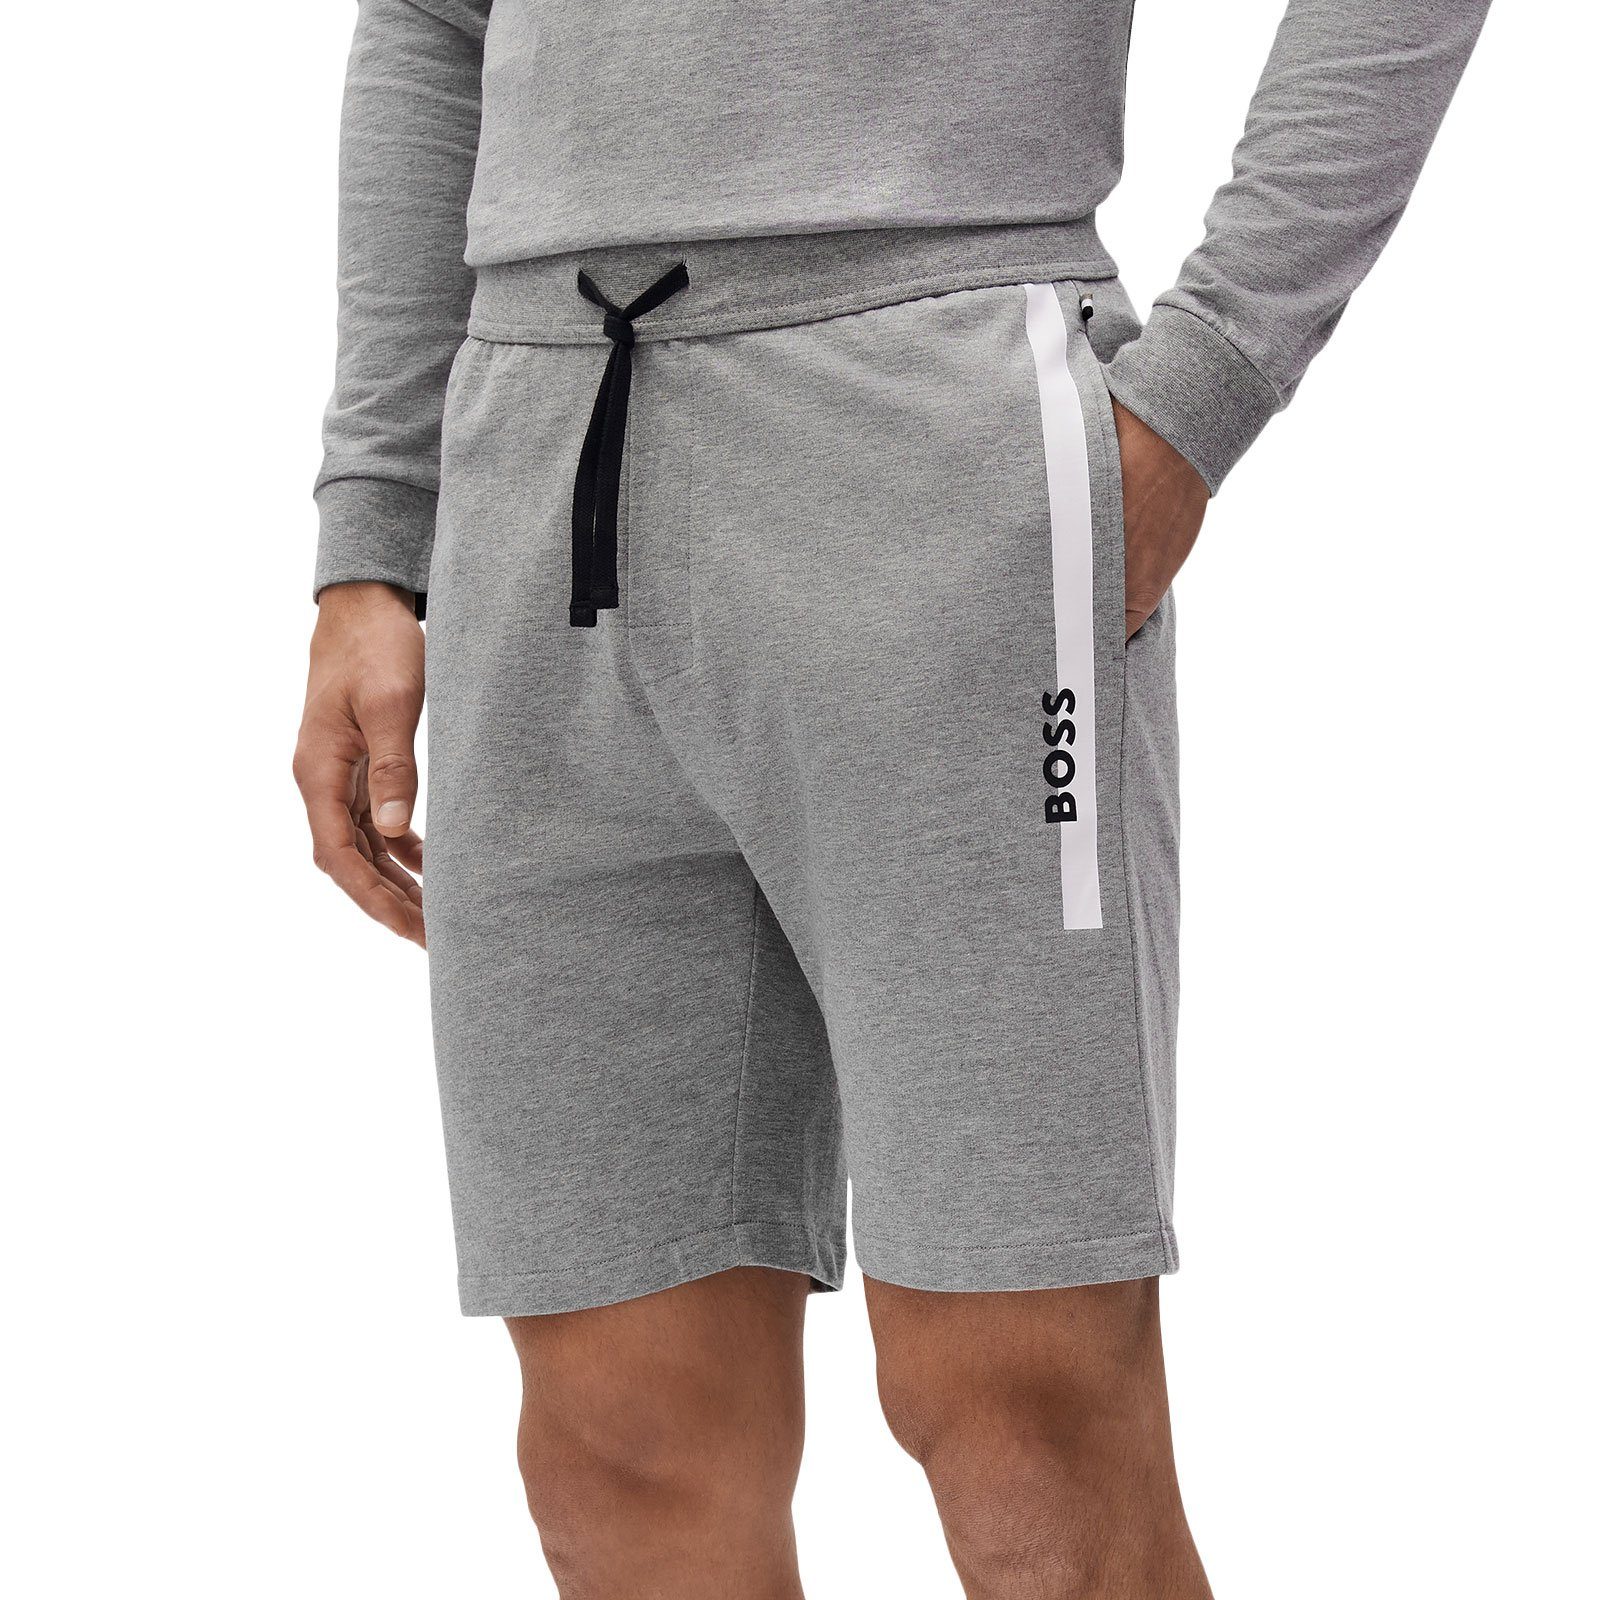 BOSS Shorts Authentic Shorts 033 kontrastfarbenen medium mit Streifen grey